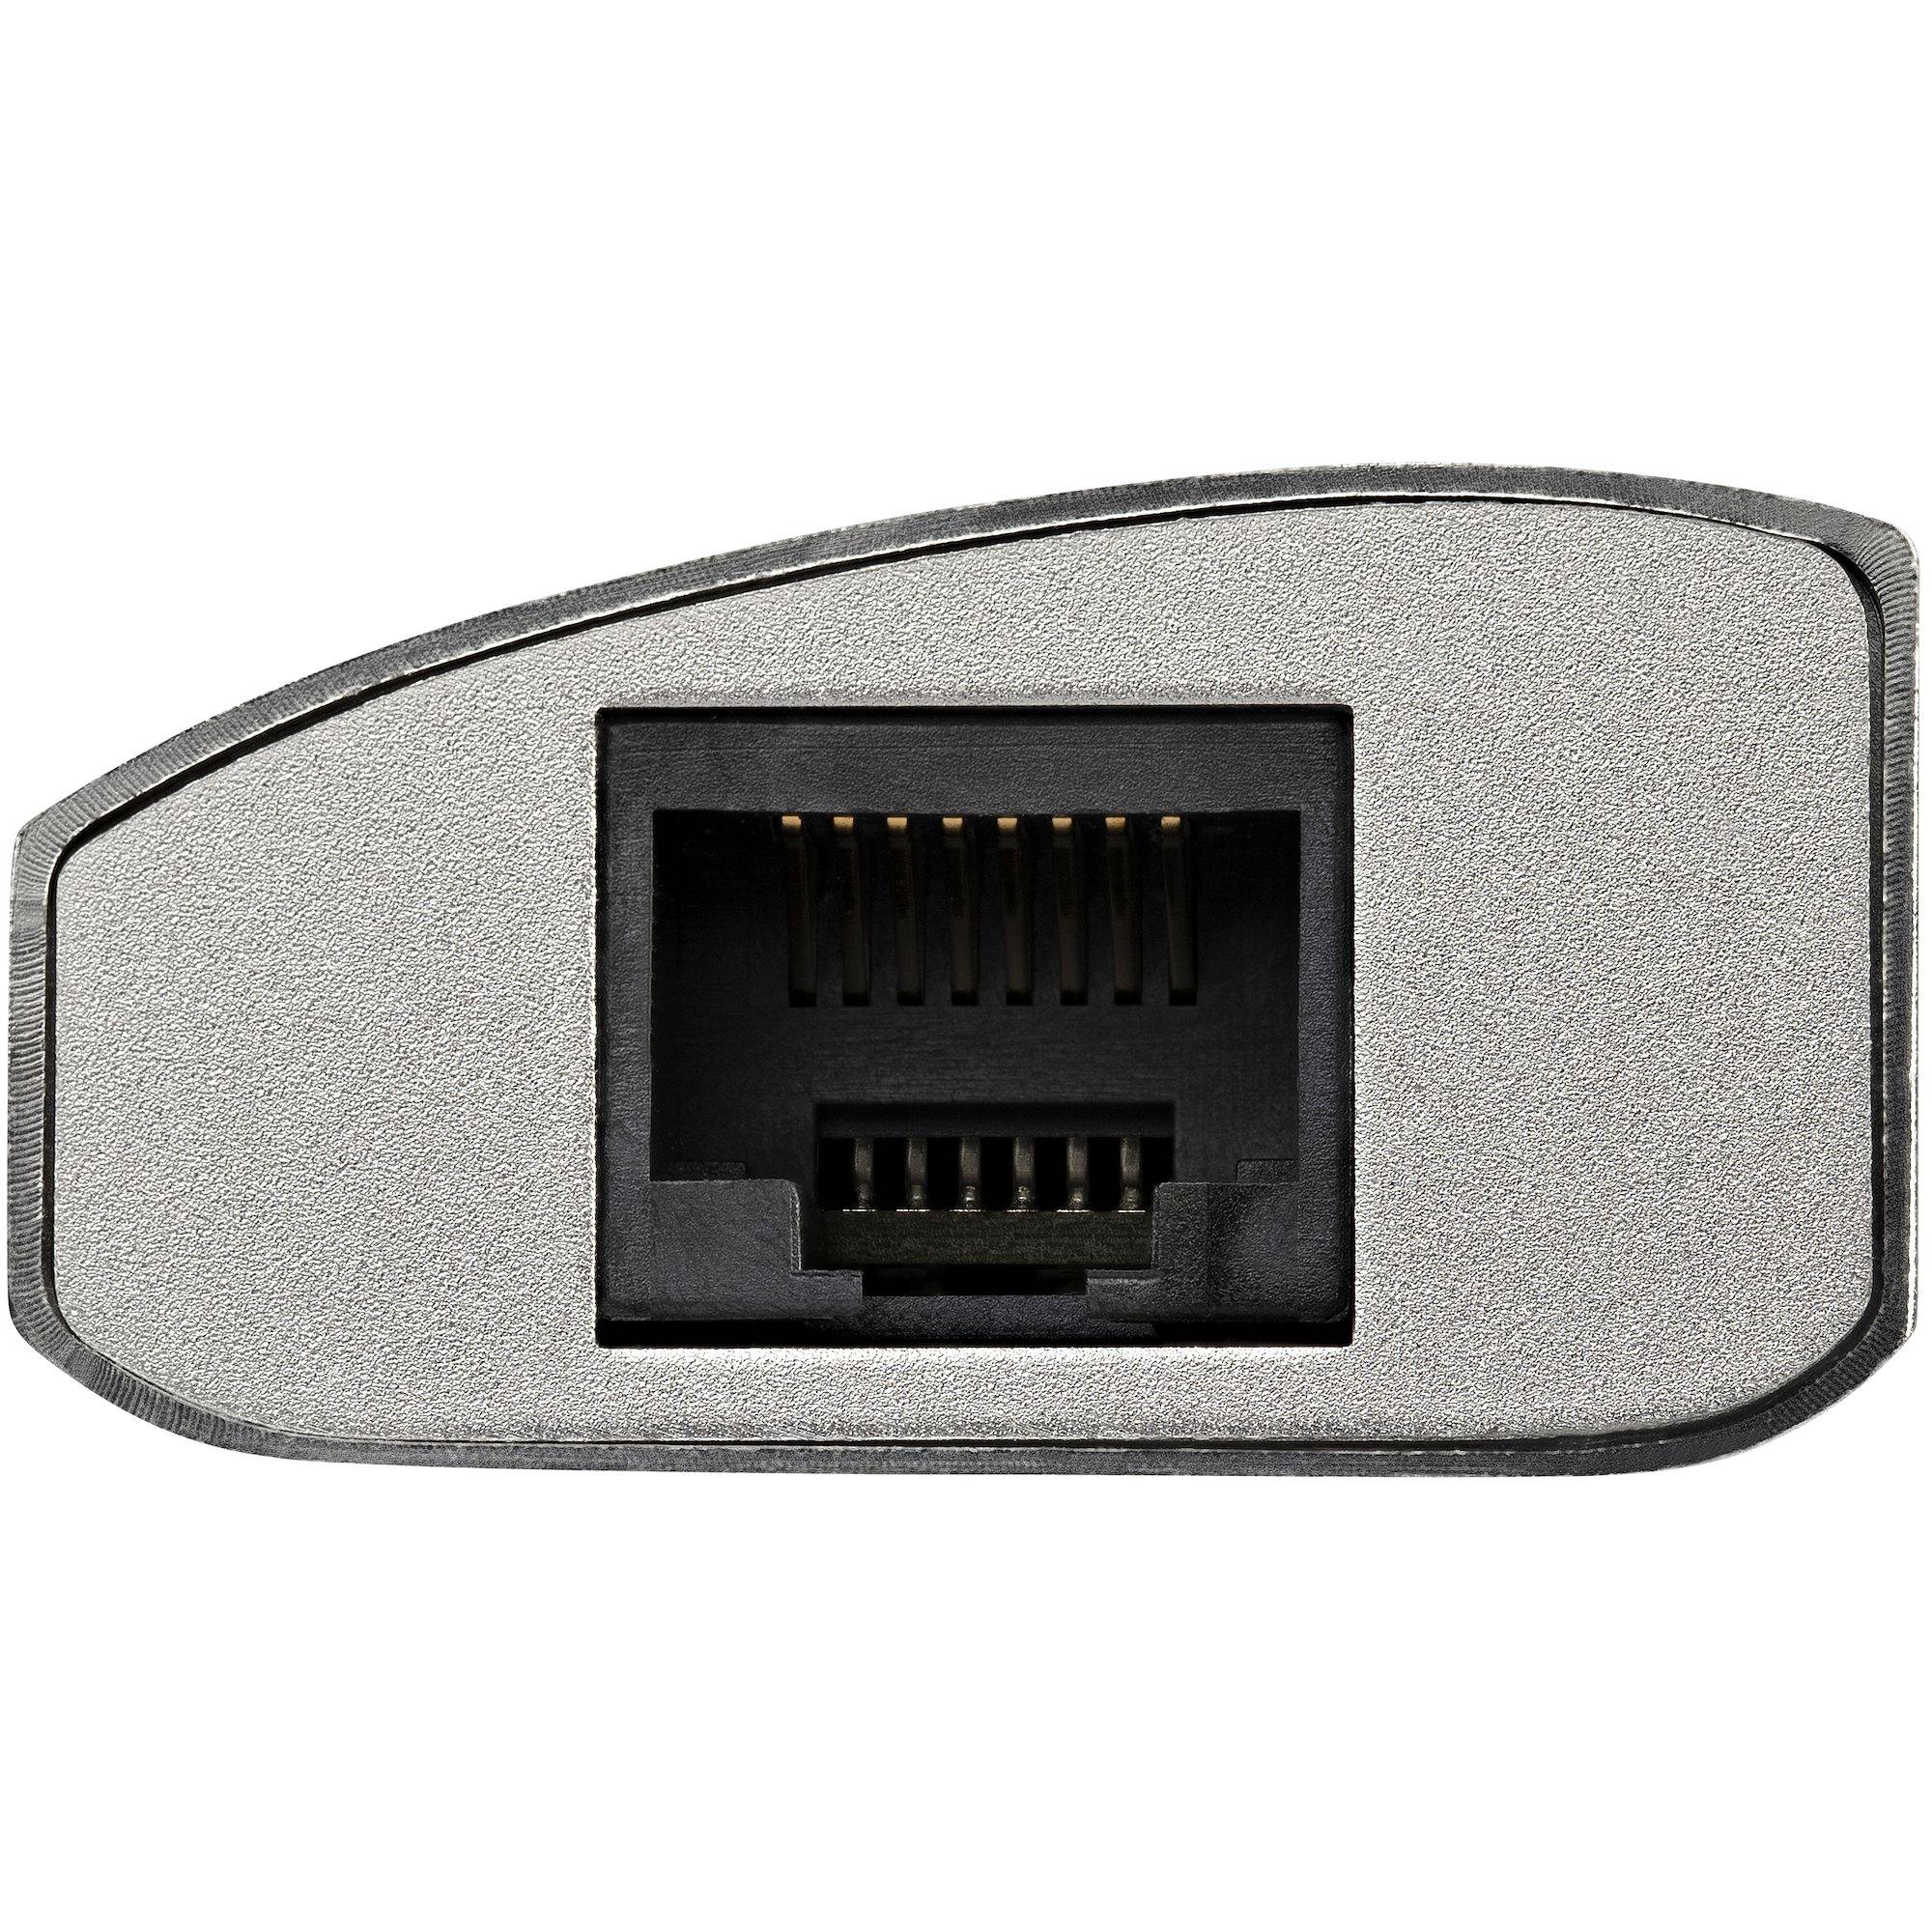 Rca Informatique - image du produit : HUB USB 3.0 A 3 PORTS AVEC GIGABIT ETHERNET - ARGENT